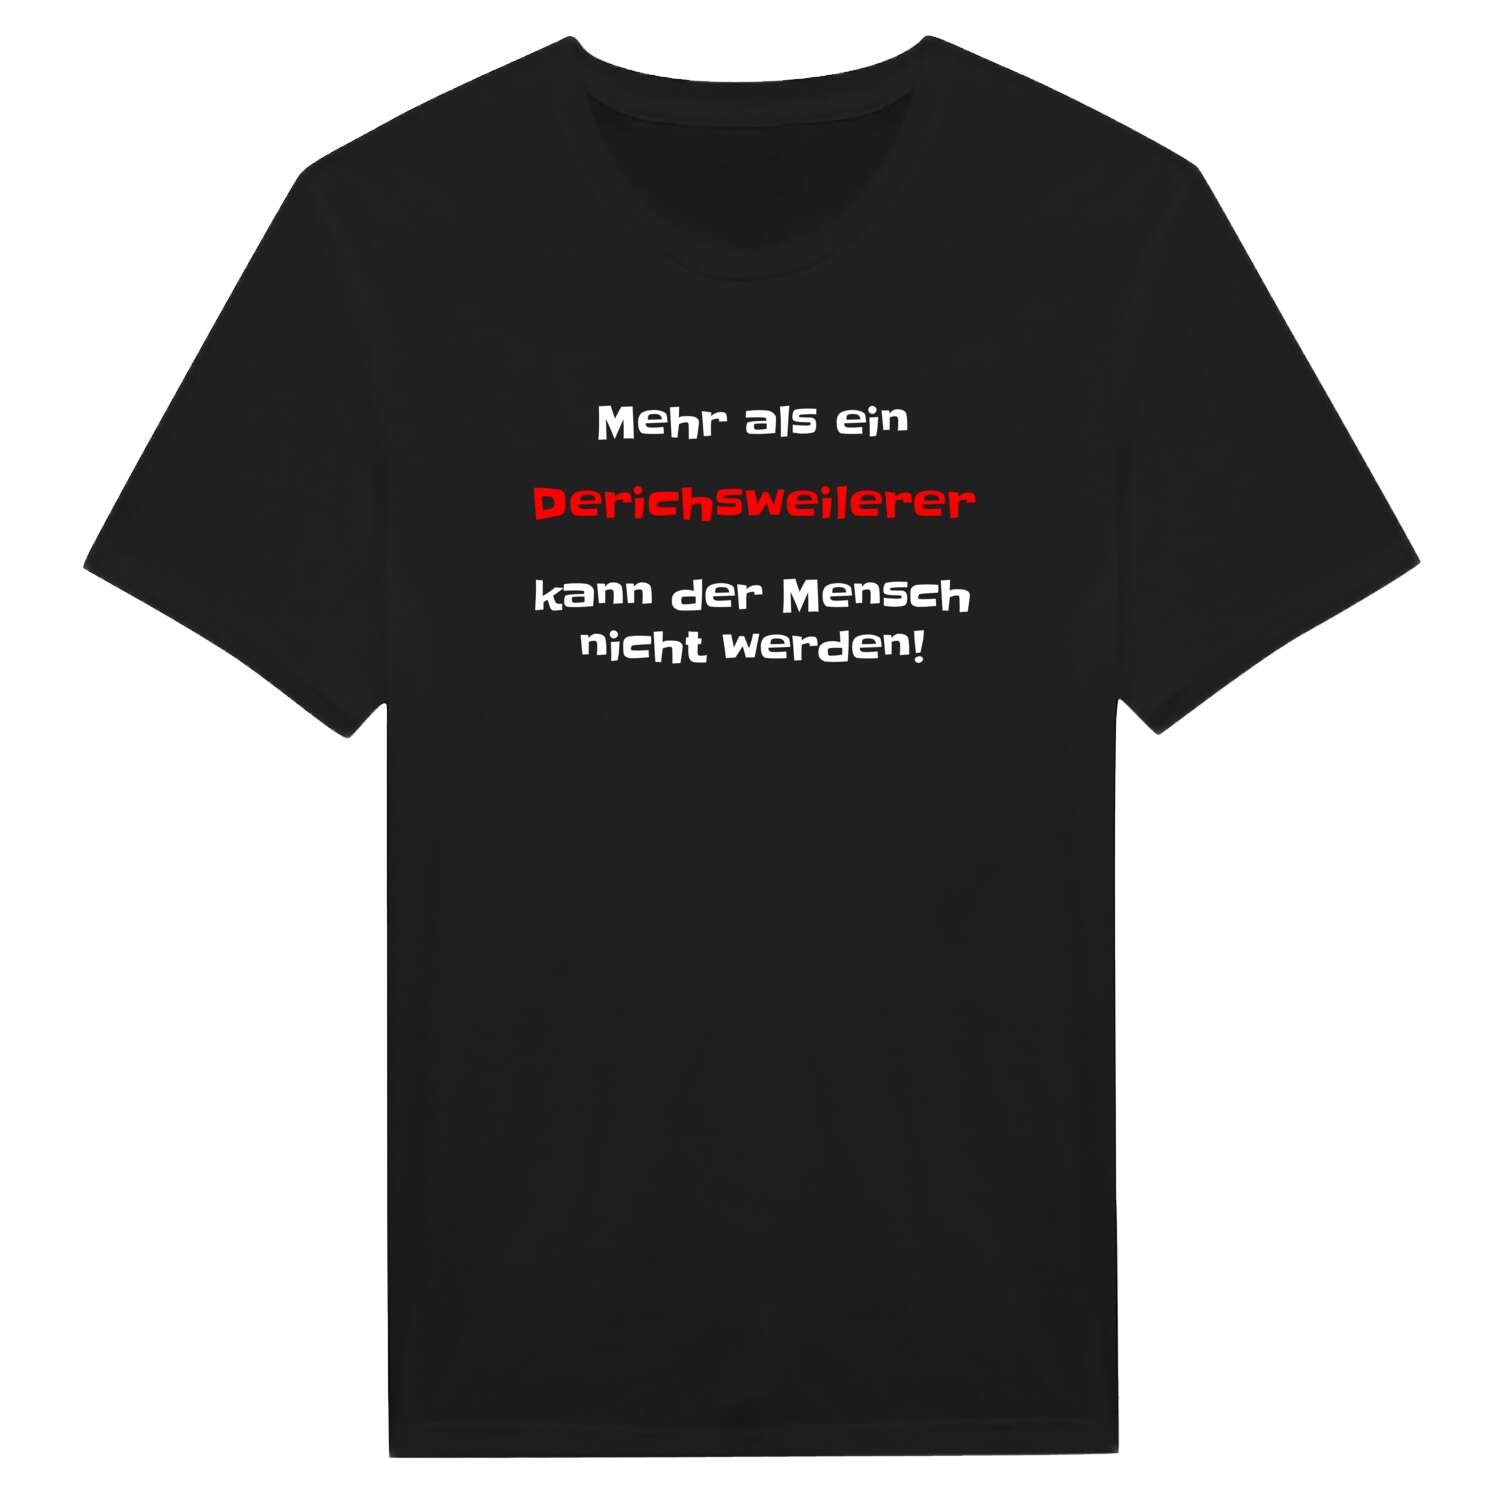 Derichsweiler T-Shirt »Mehr als ein«